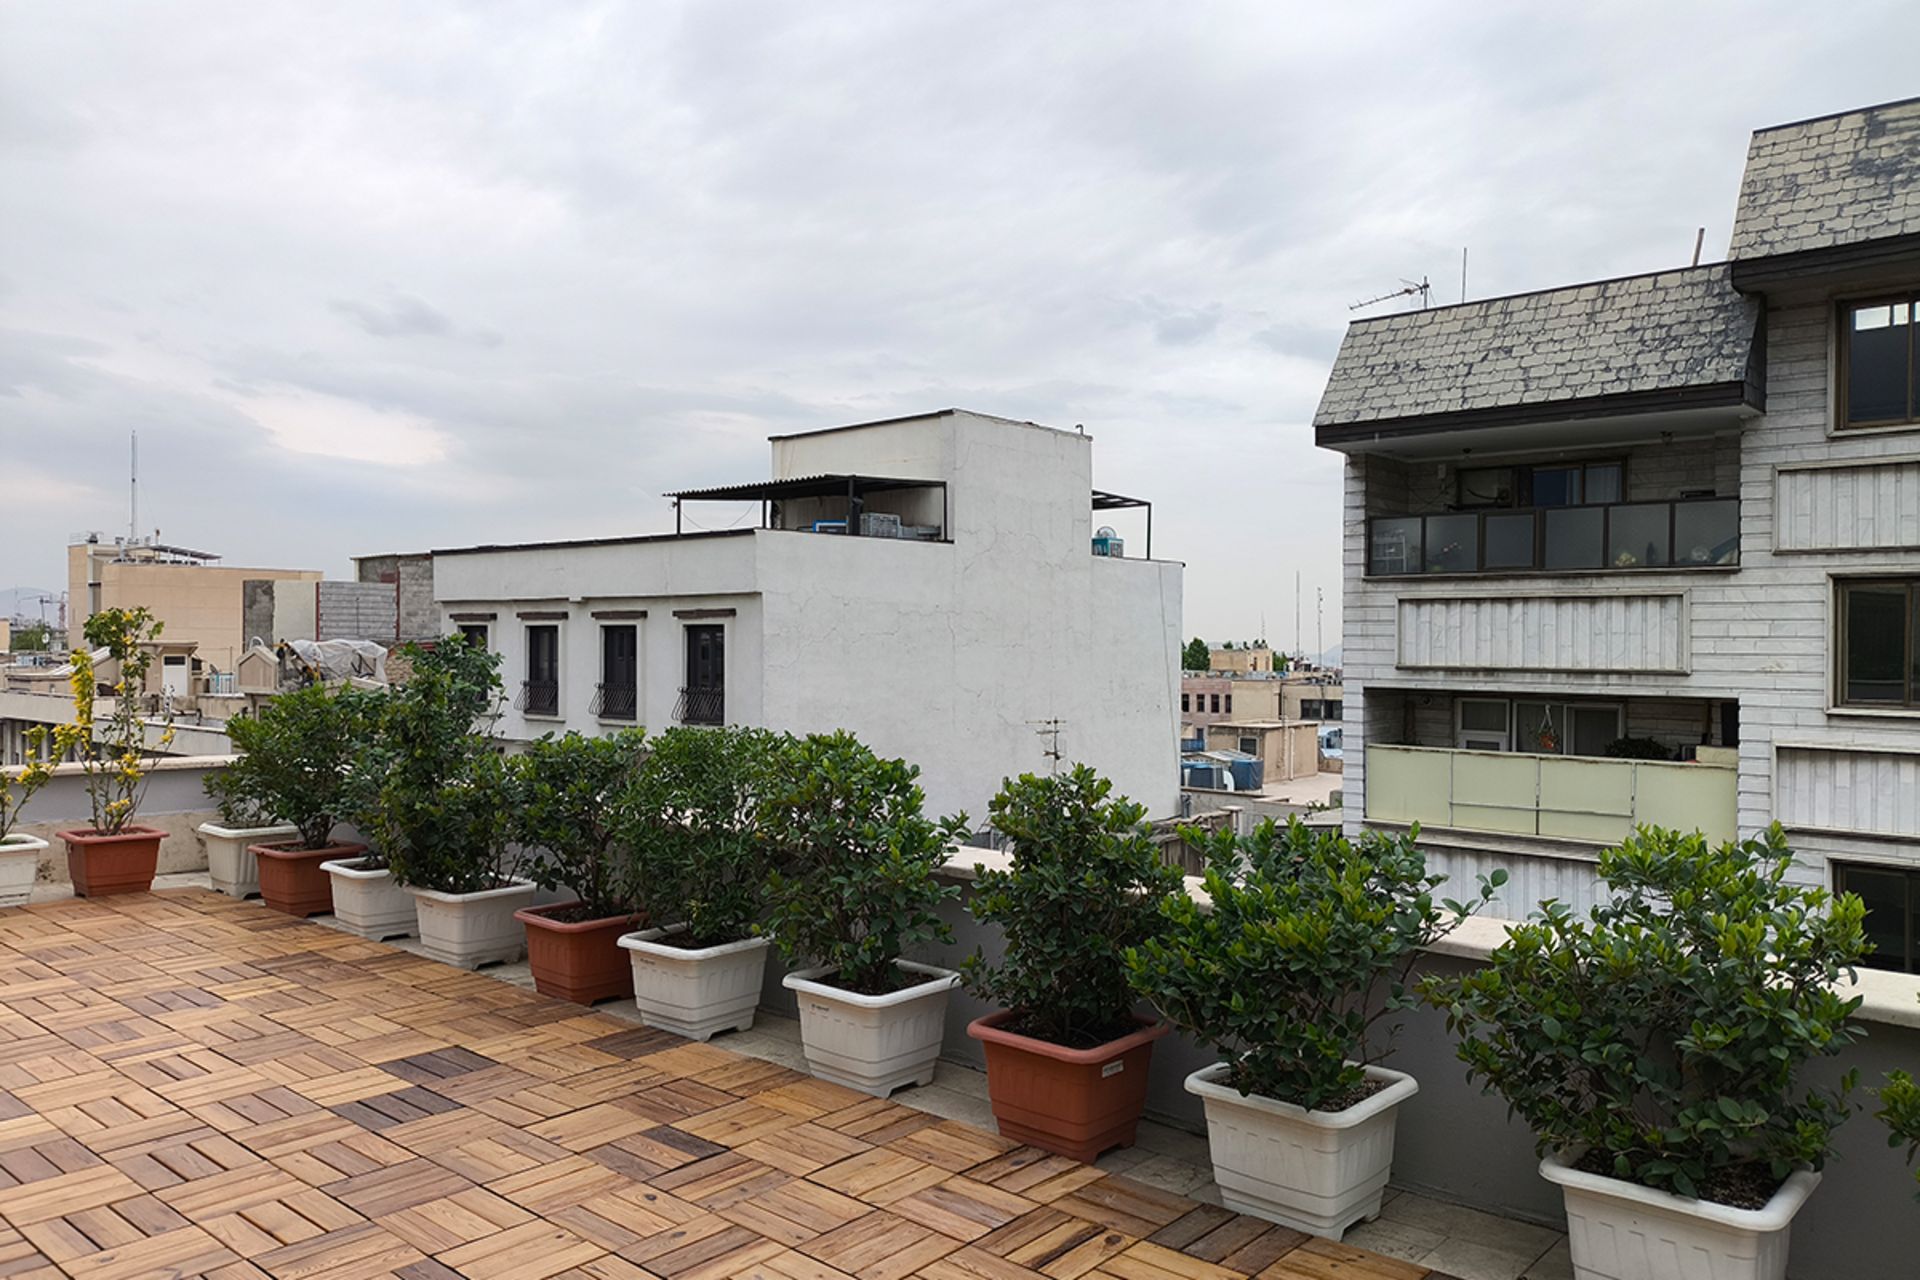 نمونه عکس دوربین اصلی پوکو X6 پرو از بام یک ساختمان با منظره آسمان